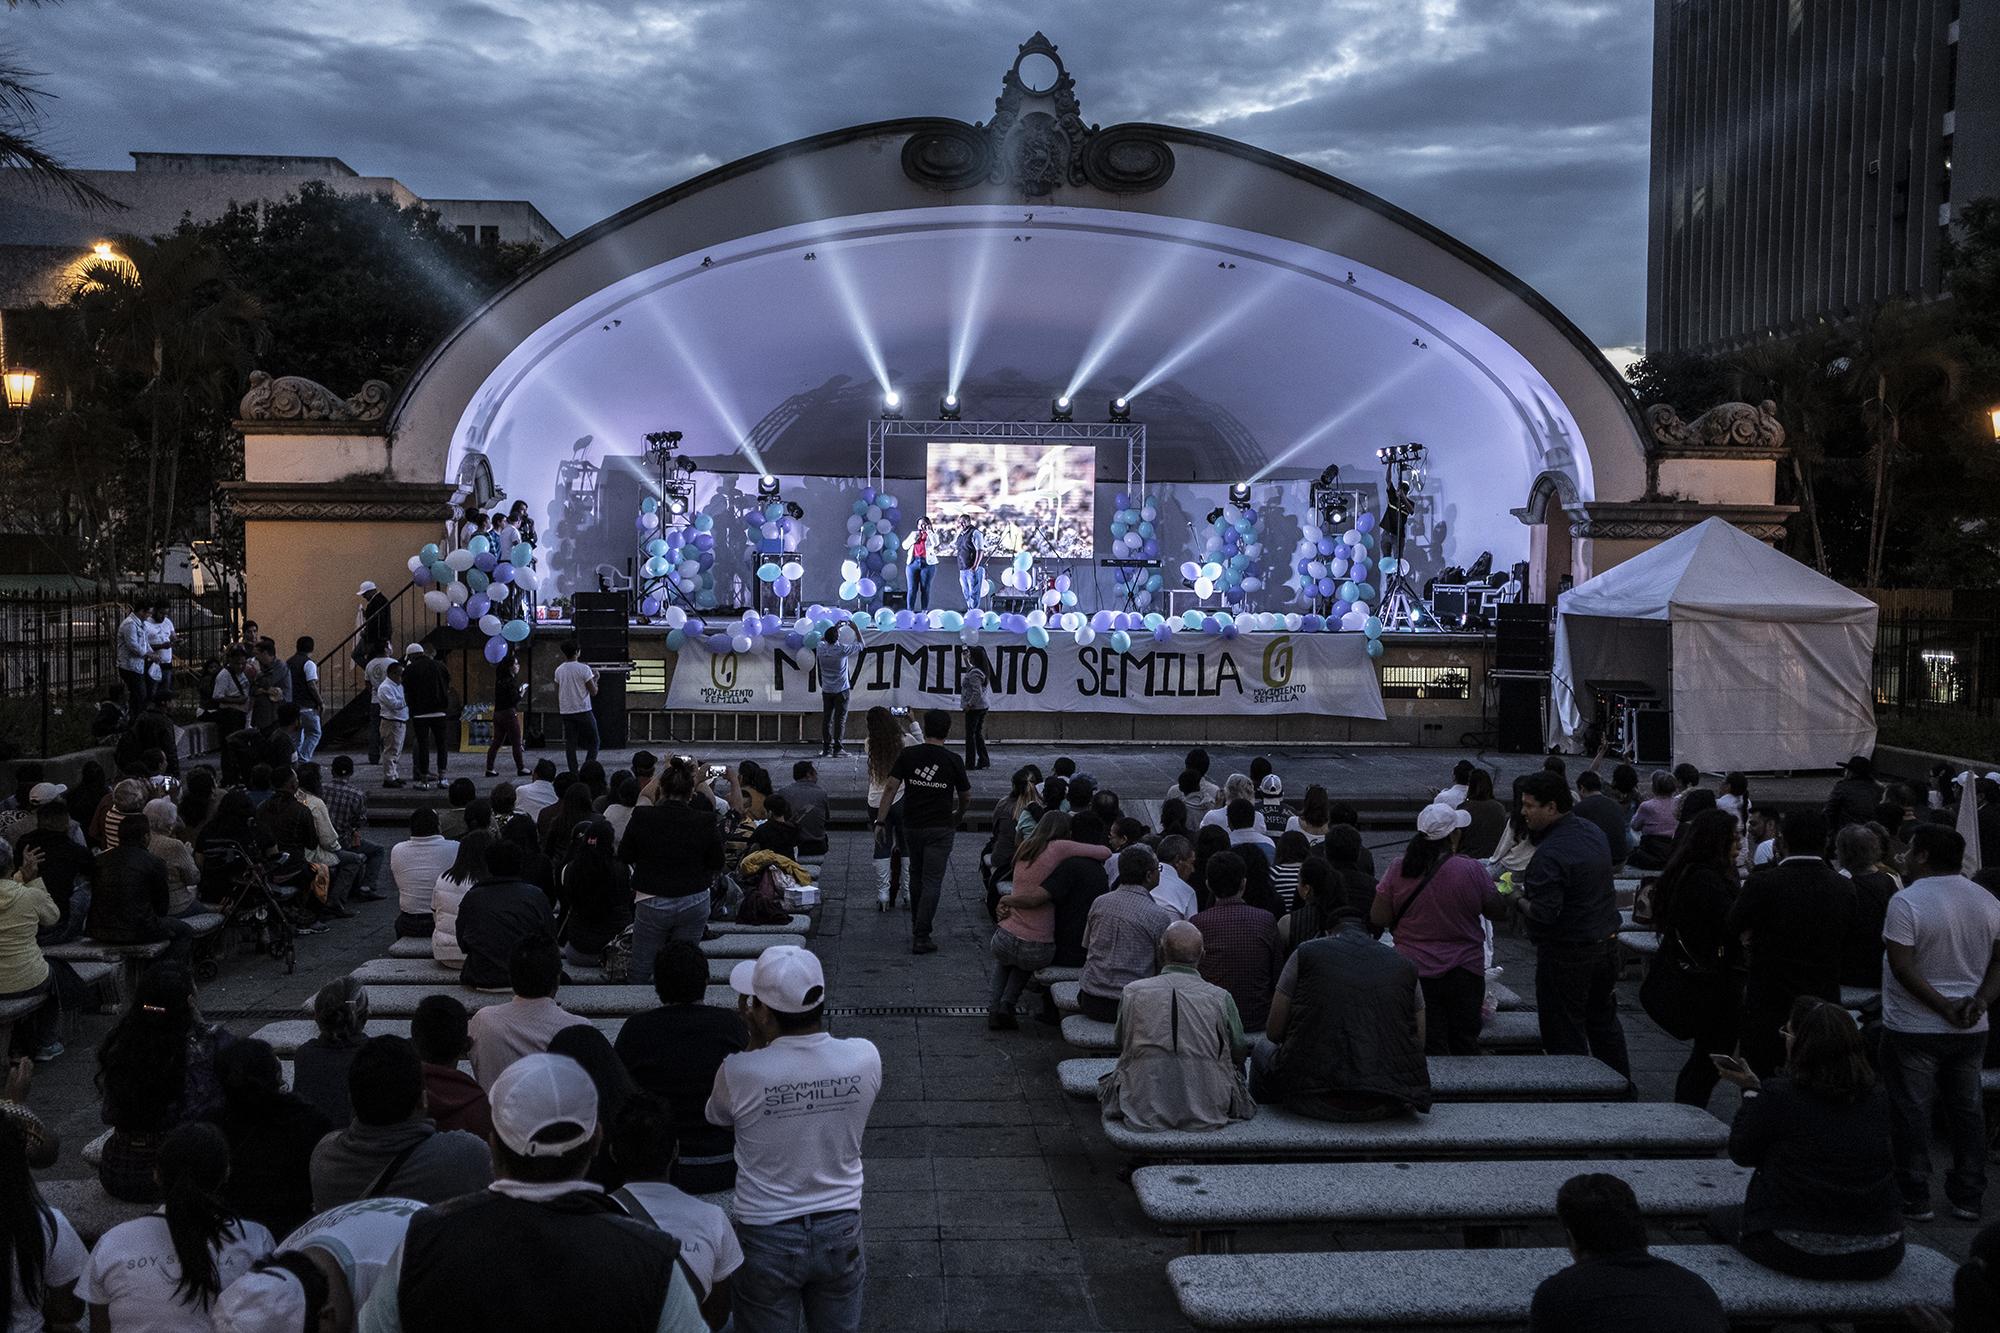 El miércoles 12 de junio de 2019 el Movimiento Semilla hizo cierre de campaña en la Plaza Constitución, Ciudad de Guatemala. Foto: Carlos Barrera